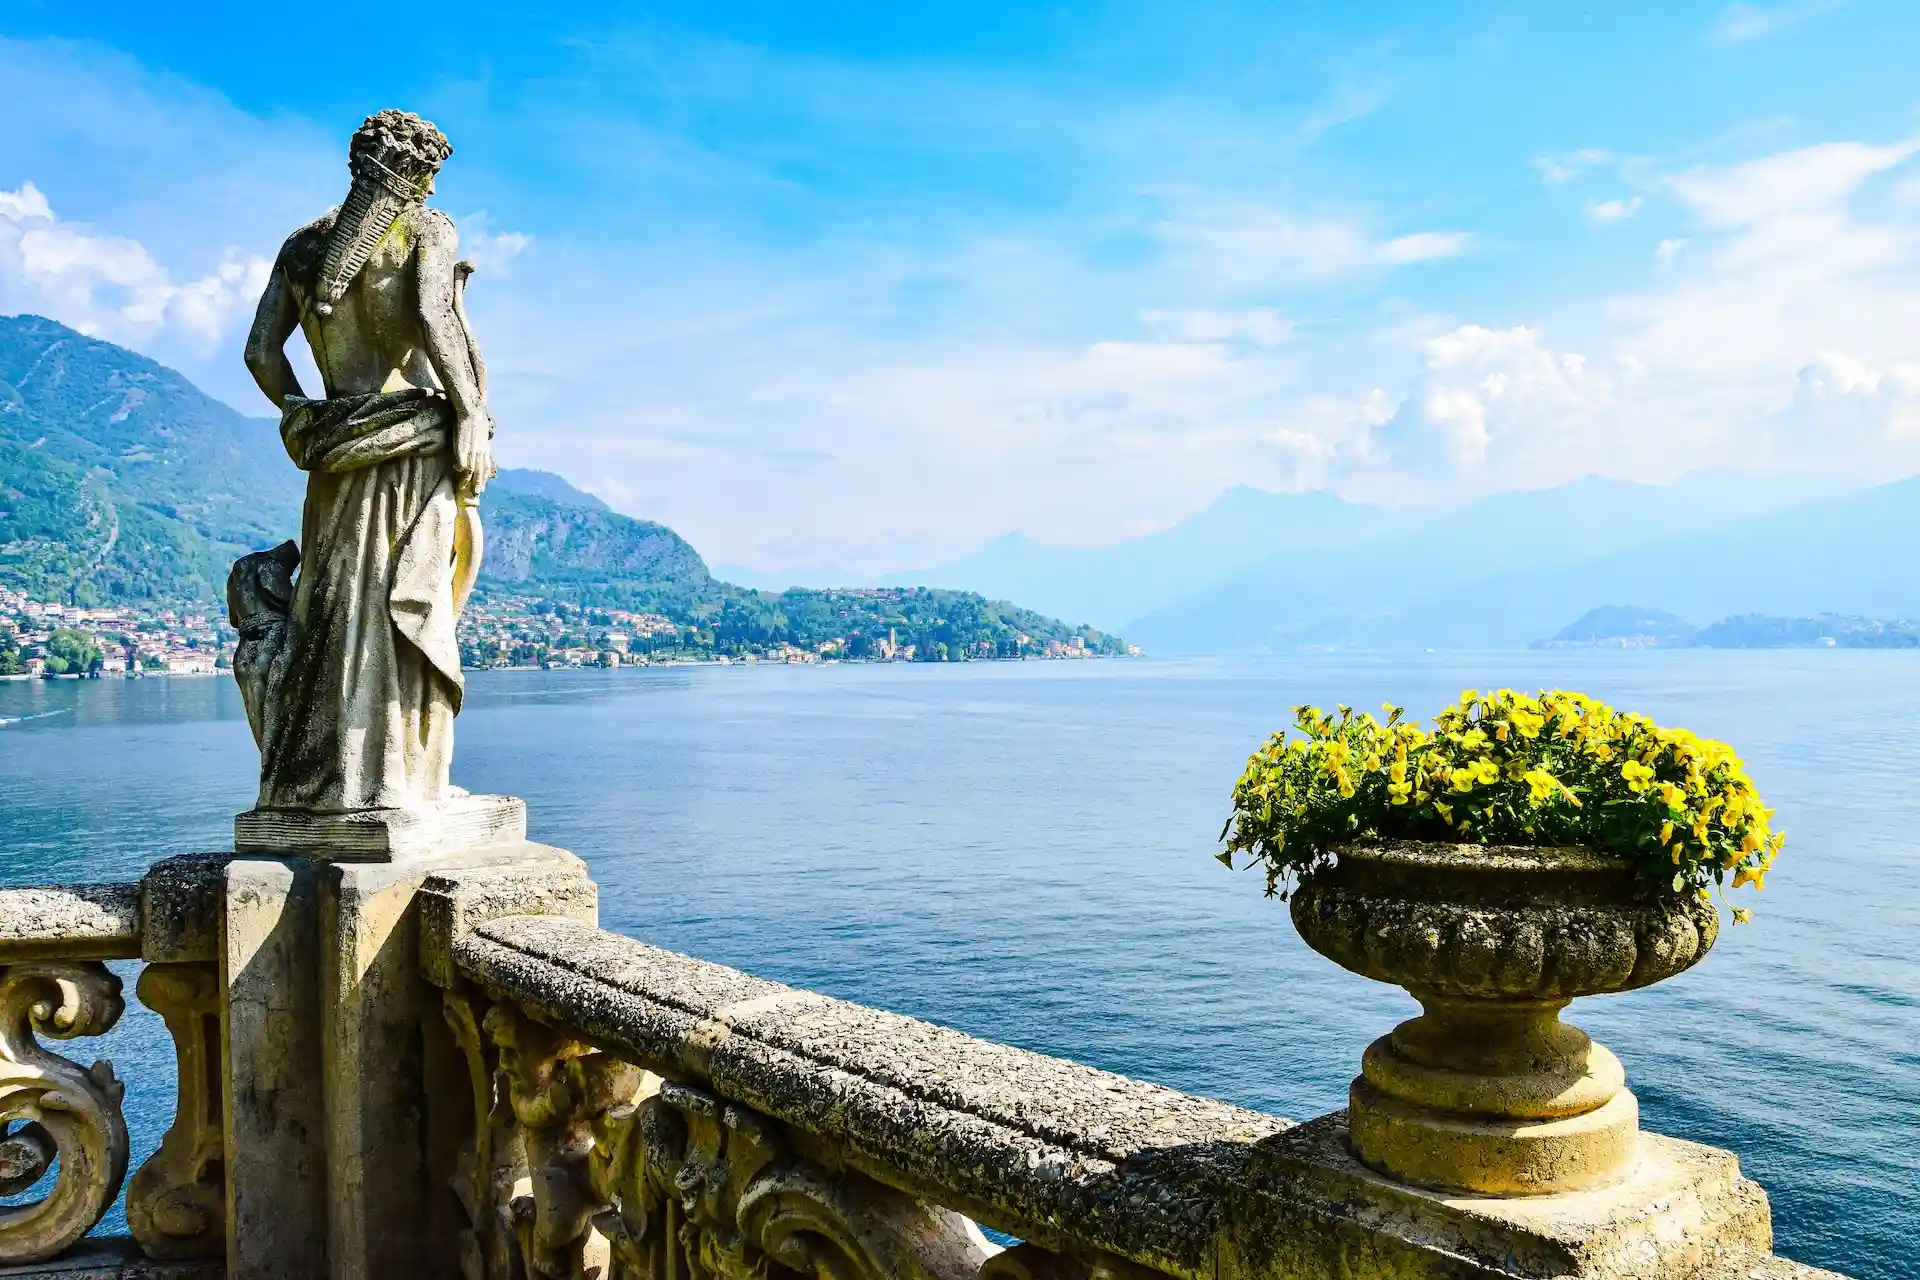 Visiting Villa Del Balbianello Prettiest Garden in Lake Como (Visiting Info & Tips)